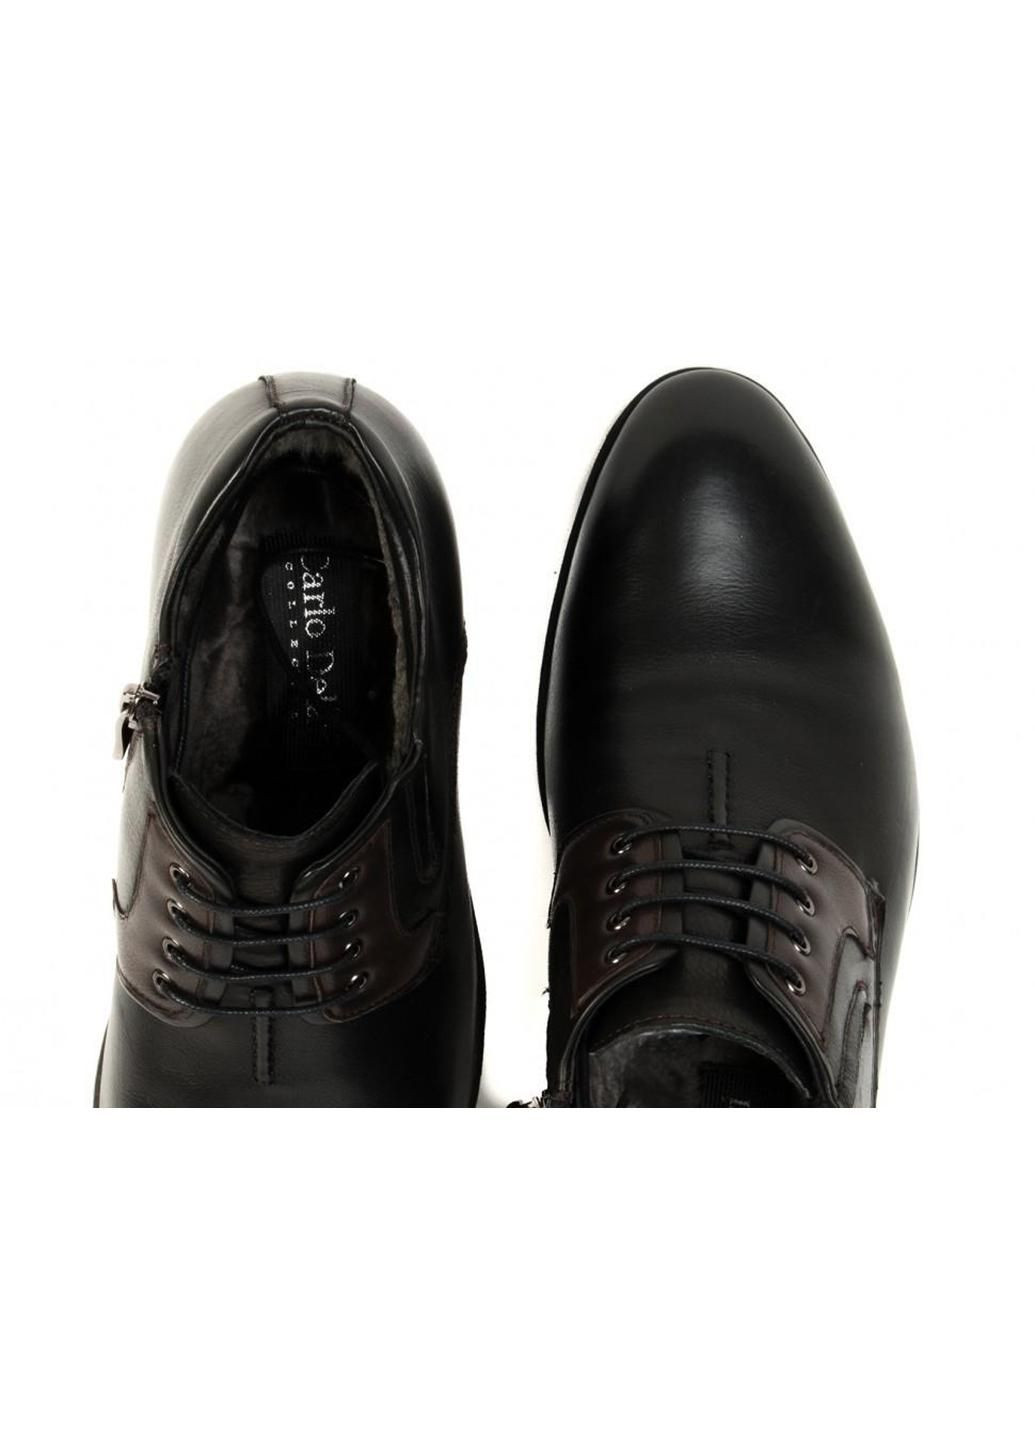 Черные зимние ботинки 7164127 цвет черный Carlo Delari